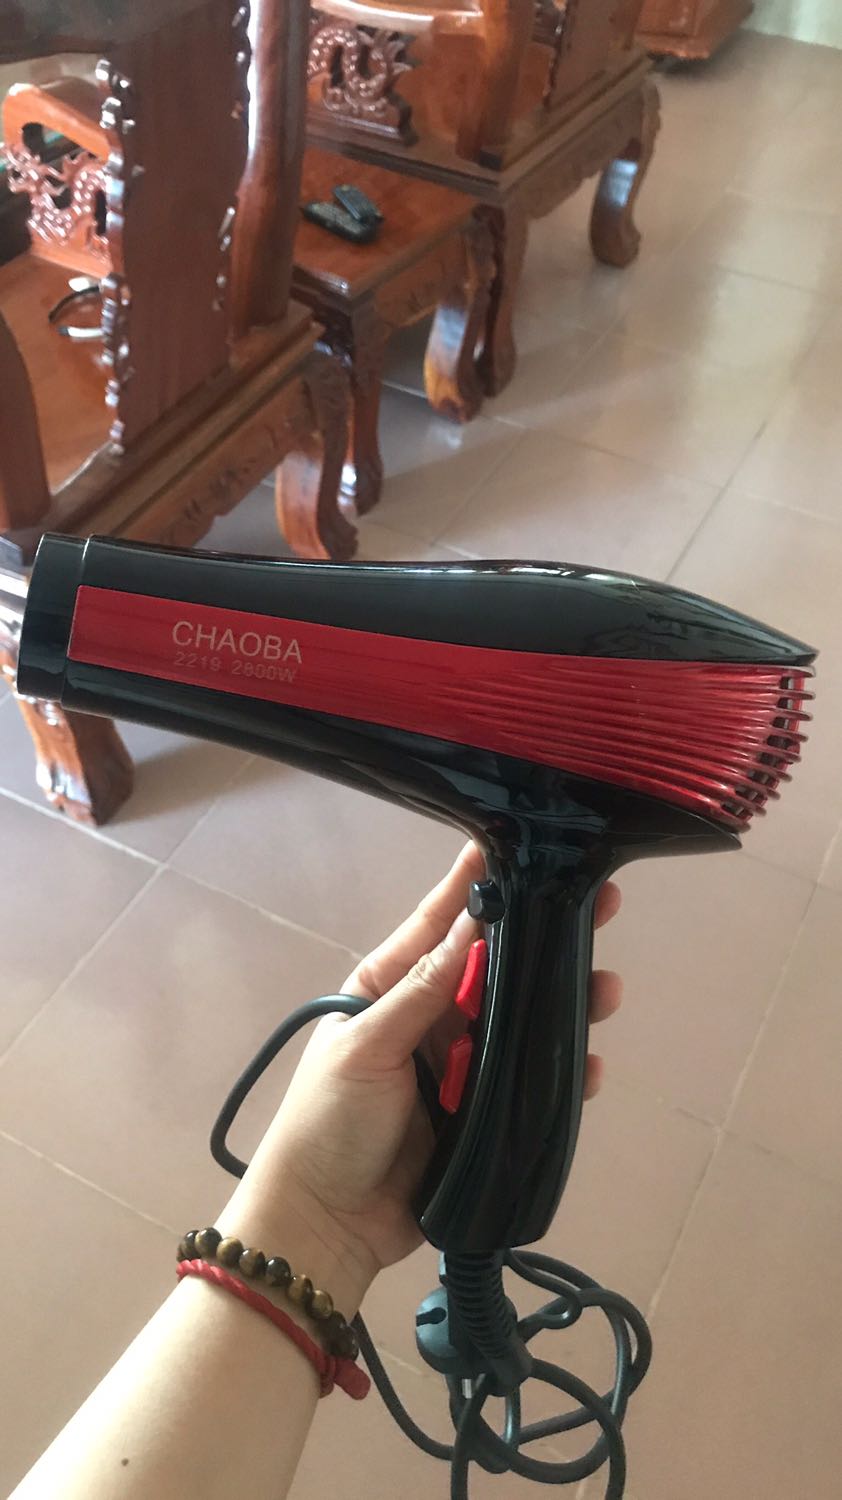 Máy sấy tóc Máy sấy tóc Chaoba 2800 công suất cao Máy sấy tóc tạo kiểu Máy sấy tóc 2 chiều Máy sấy tóc 2800W Sấy tóc chuyên nghiệp nhanh và đẹp. Giá tốt Bảo hành 12 tháng bởi NASA Store